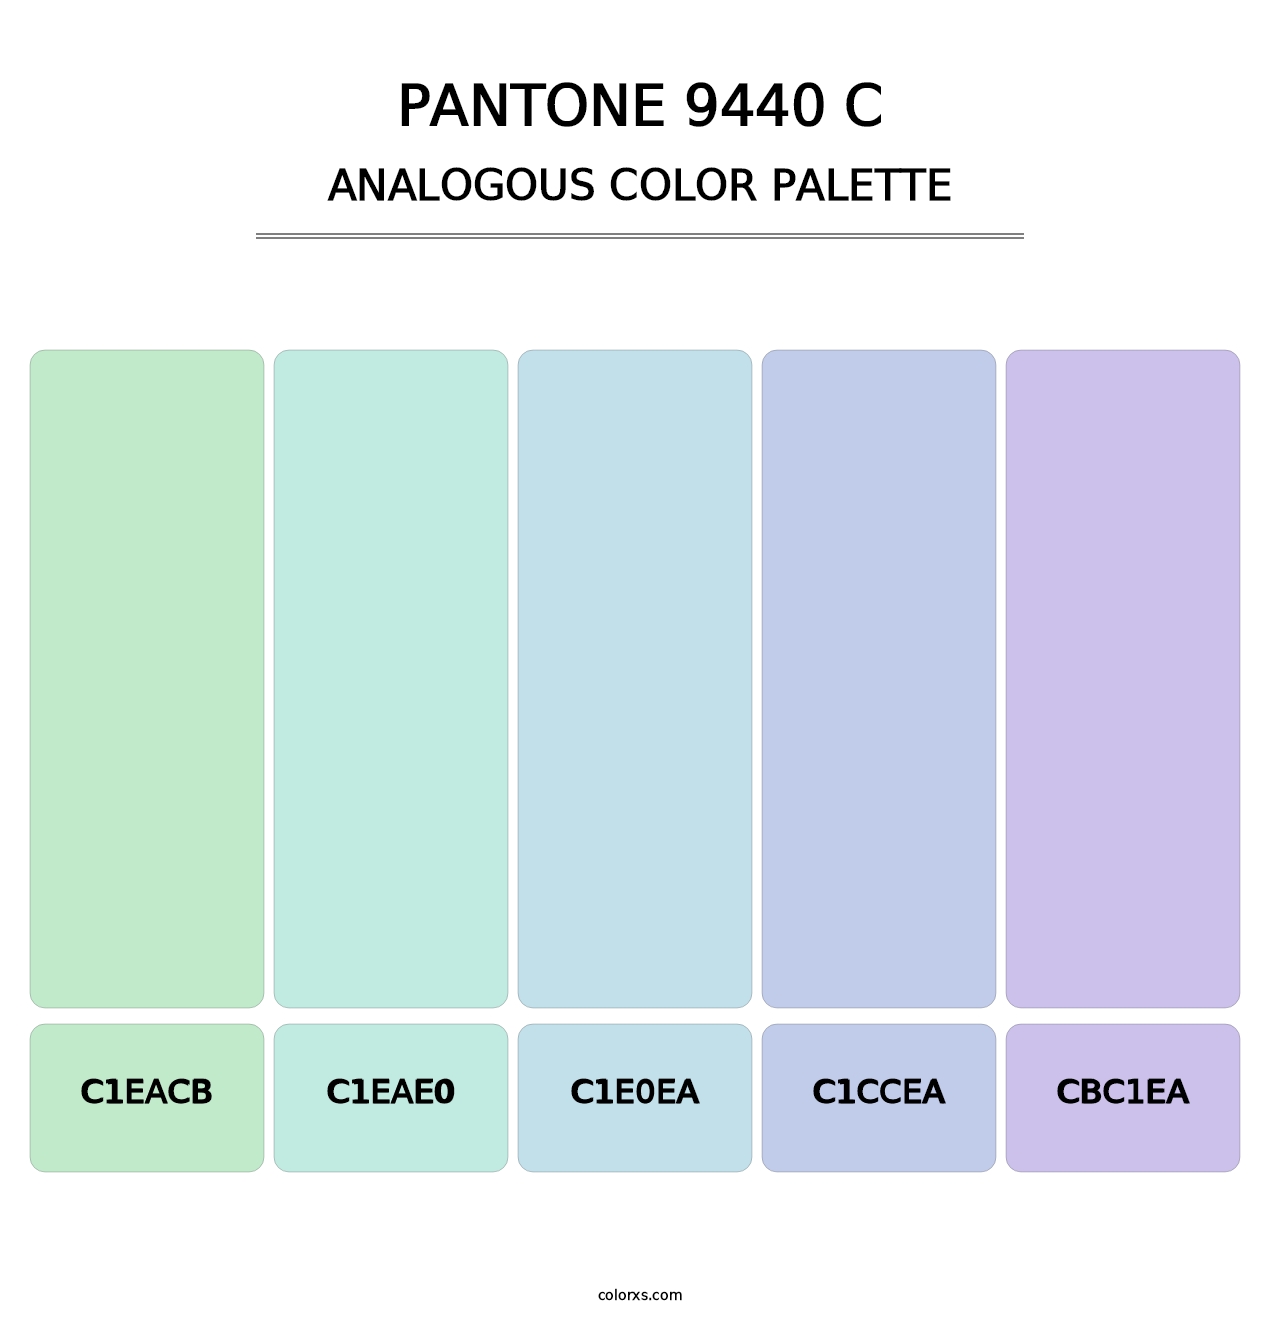 PANTONE 9440 C - Analogous Color Palette